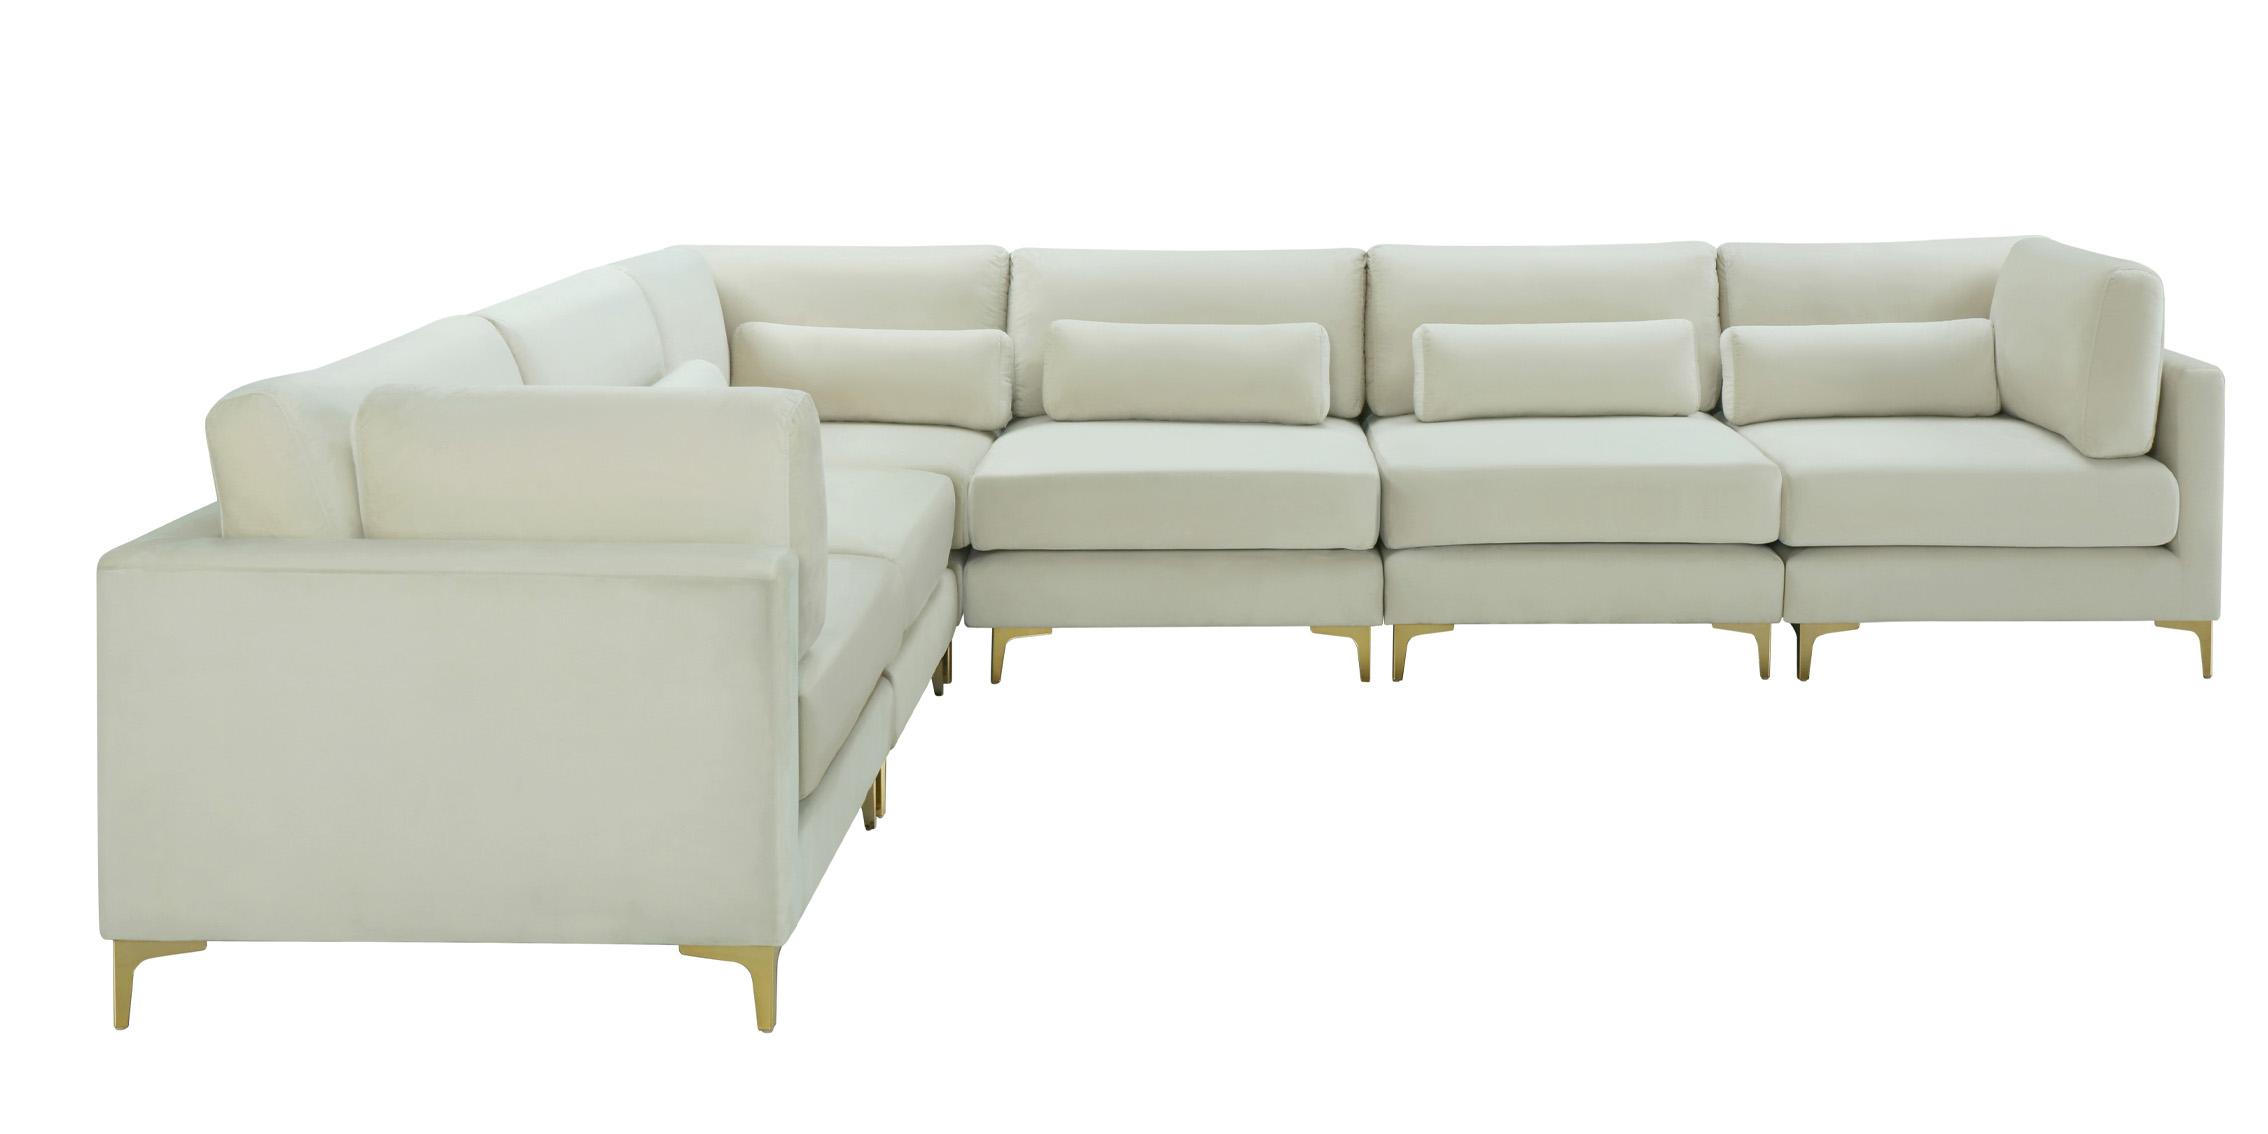 

    
Meridian Furniture JULIA 605Cream-Sec6A Modular Sectional Sofa Cream 605Cream-Sec6A
